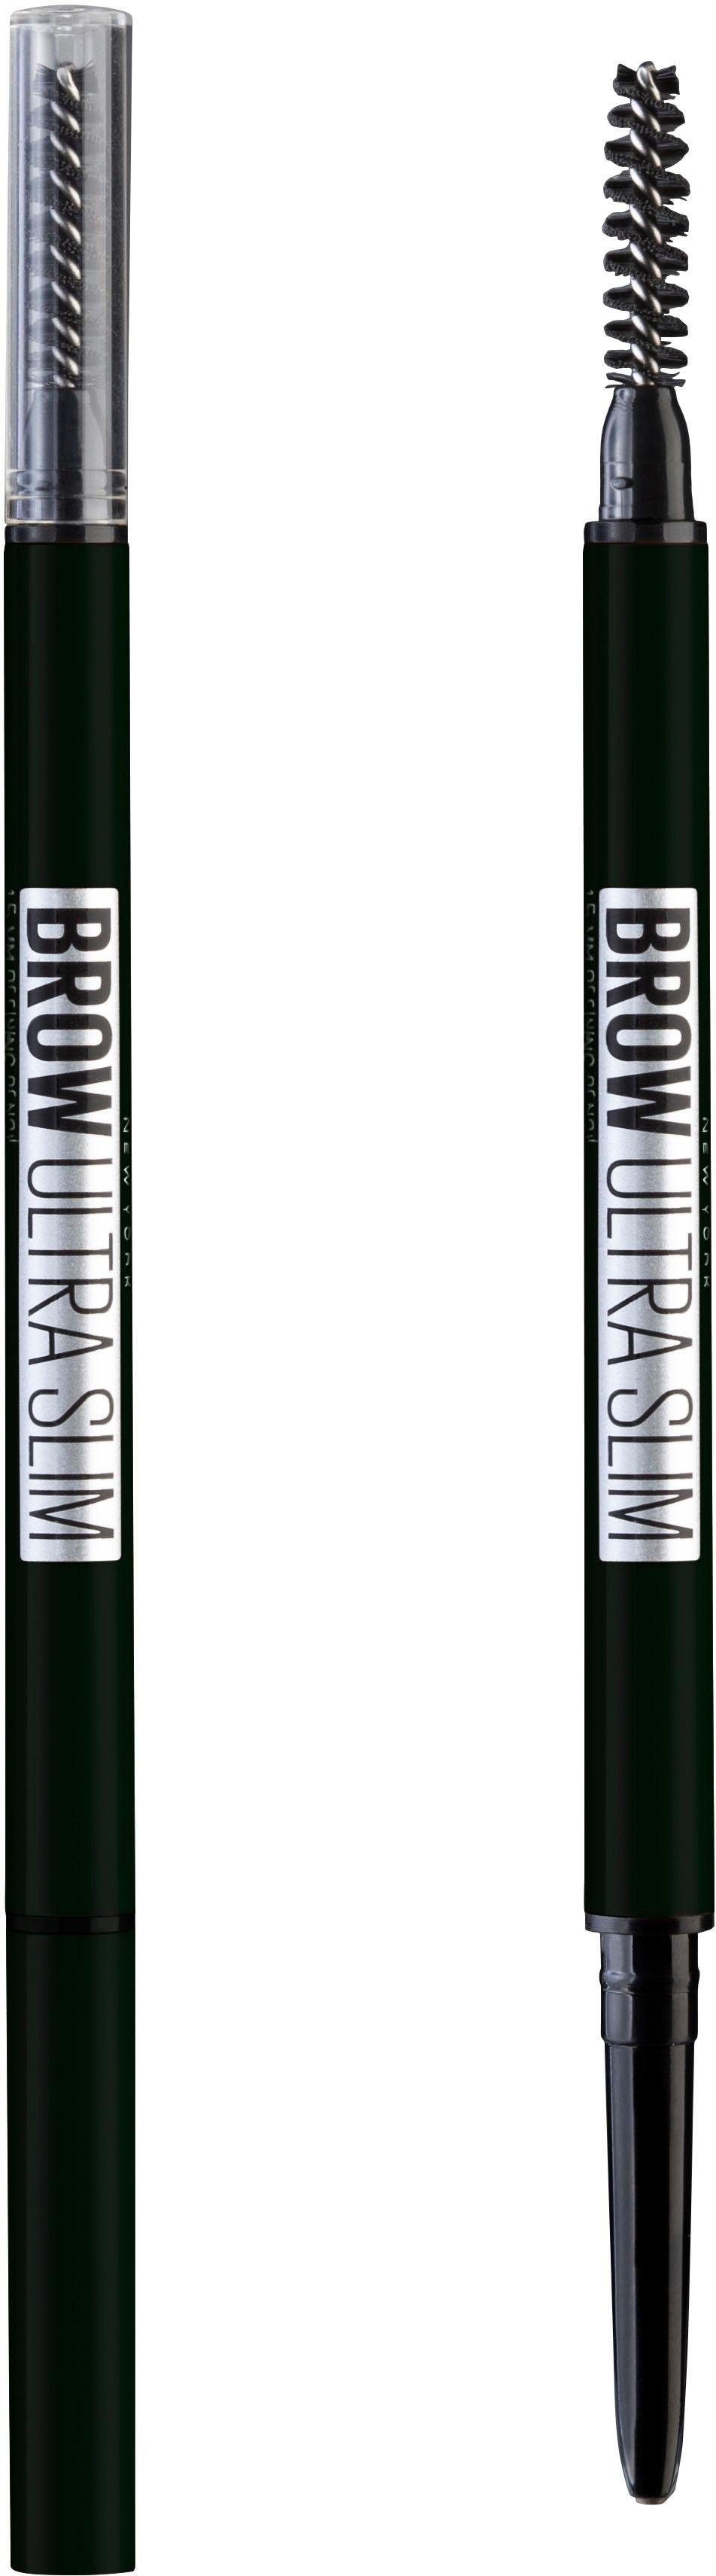 NEW Browliner Augenbrauen Augenbrauen-Stift 6 MAYBELLINE Ultra black definierte Brow Nr. für Slim Liner, brown YORK